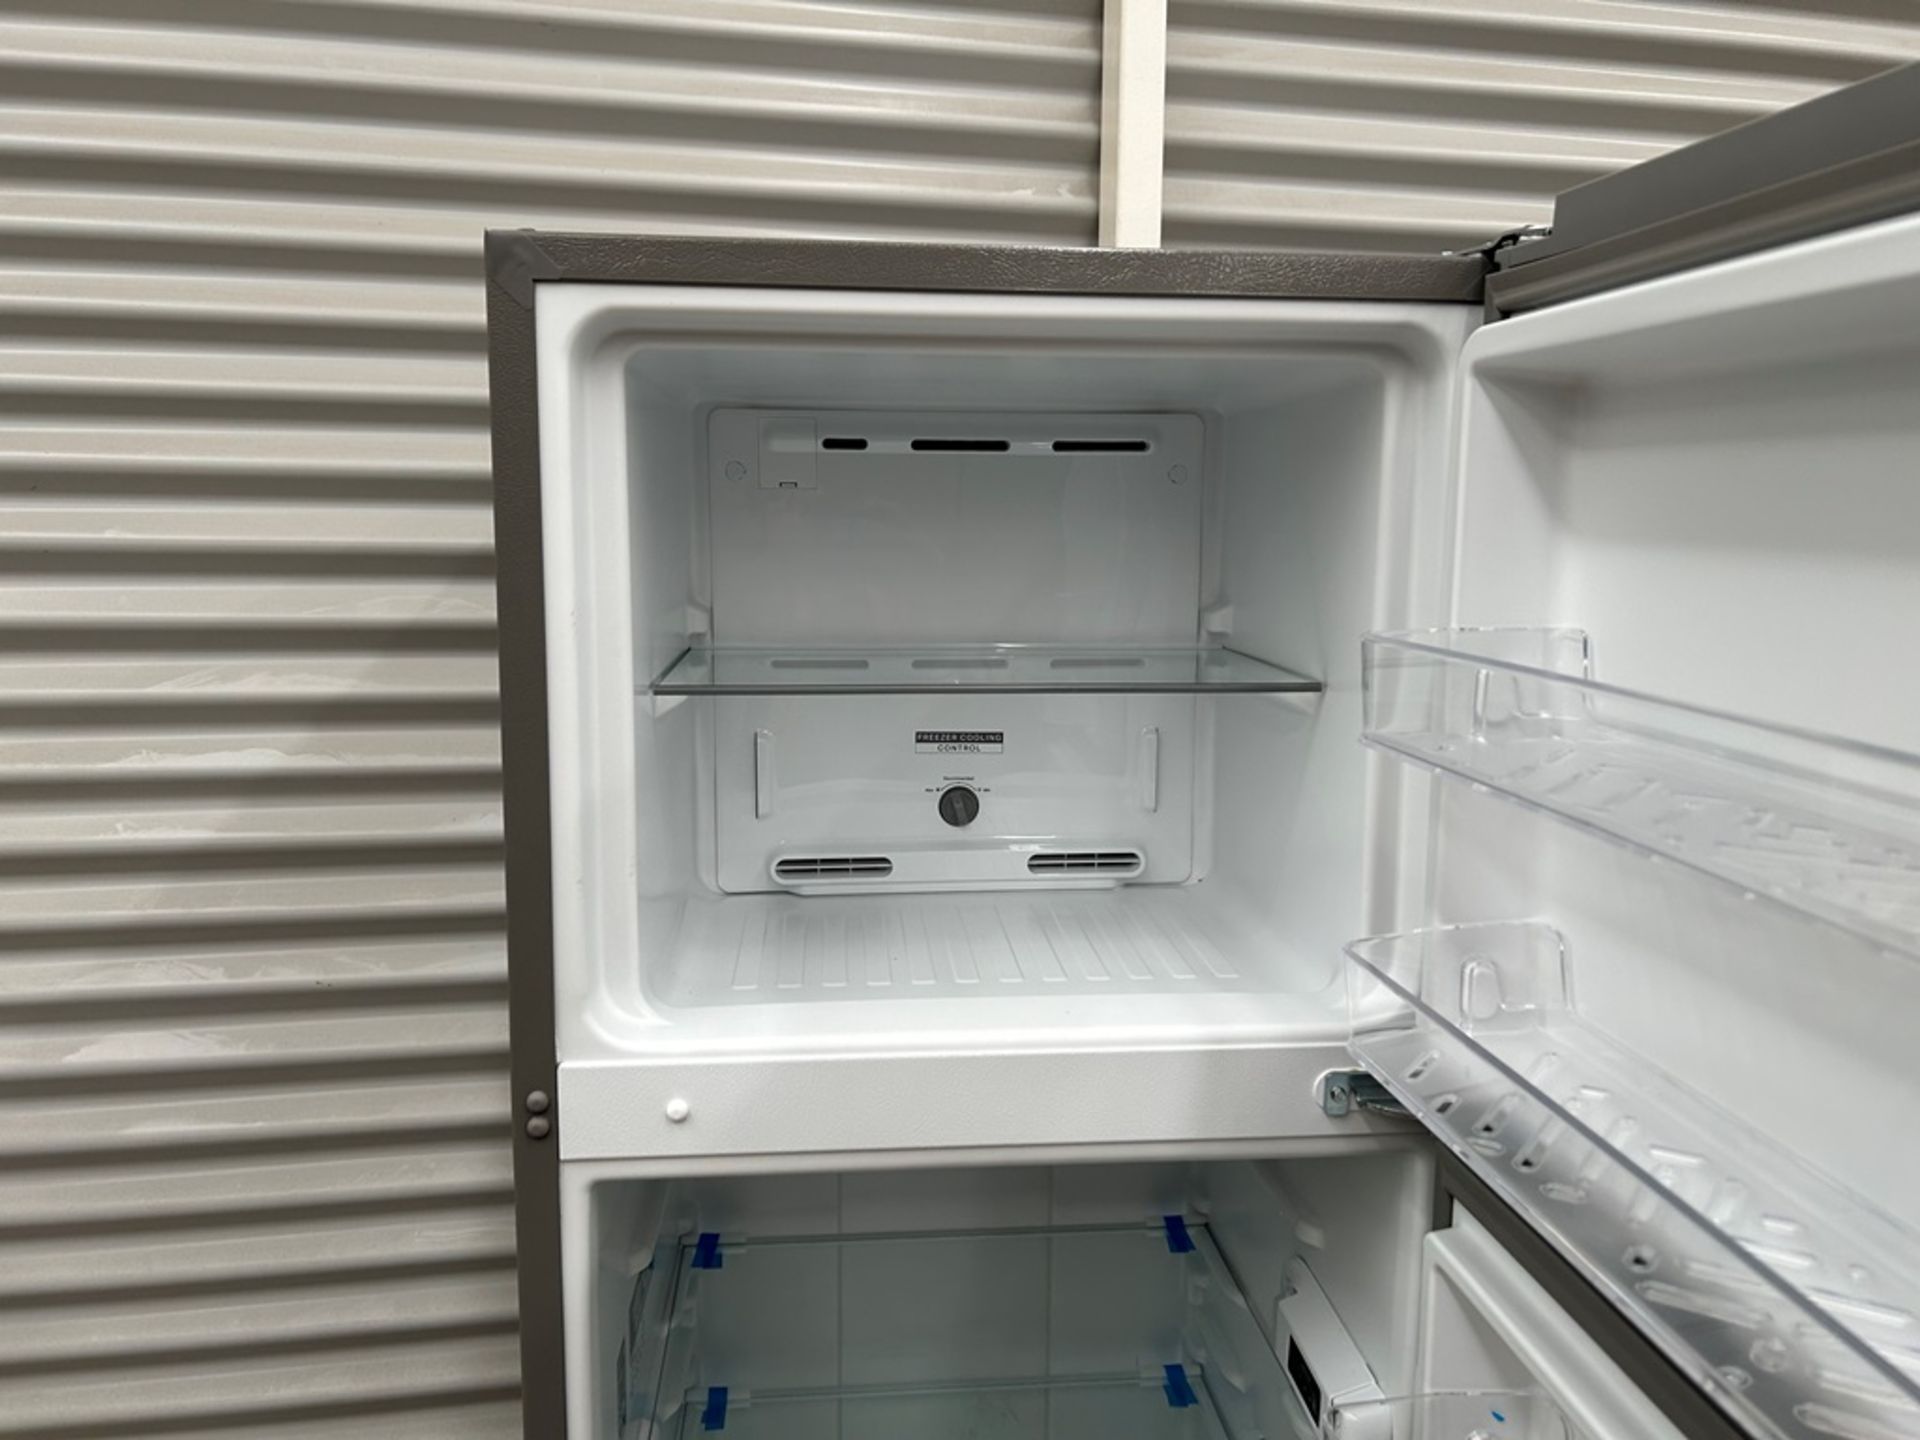 Lote de 2 refrigeradores contiene: 1 Refrigerador Marca WHIRPOOL, Modelo WT1230K, Serie 91306, Colo - Image 5 of 17